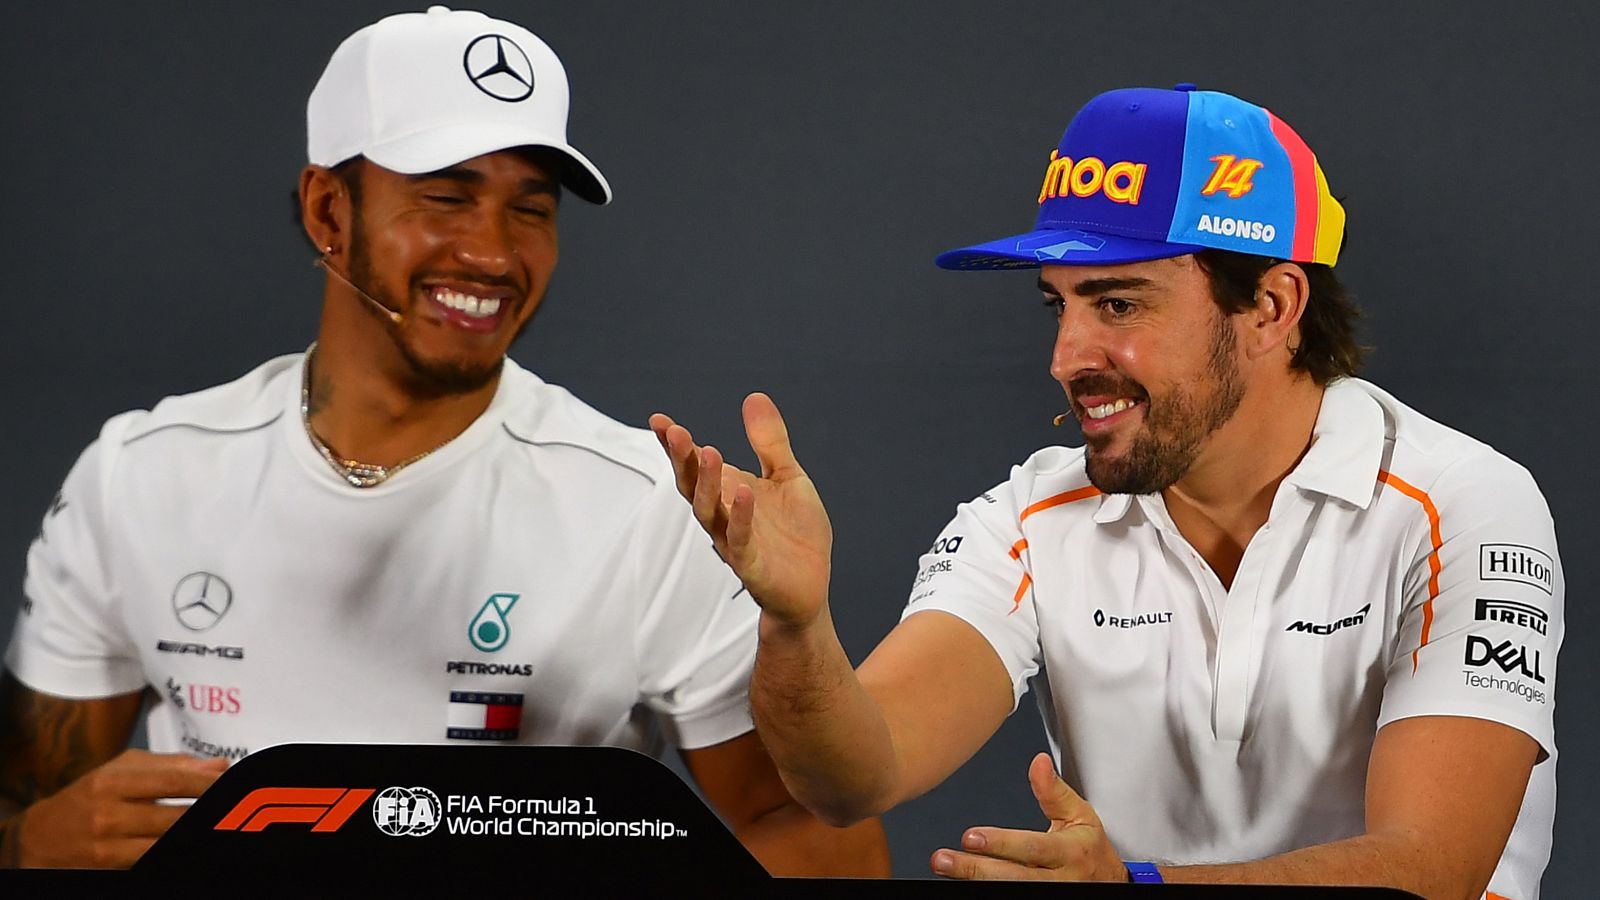 Buena sintonía entre Fernando Alonso (d) y Lewis Hamilton (i) en rueda de prensa.